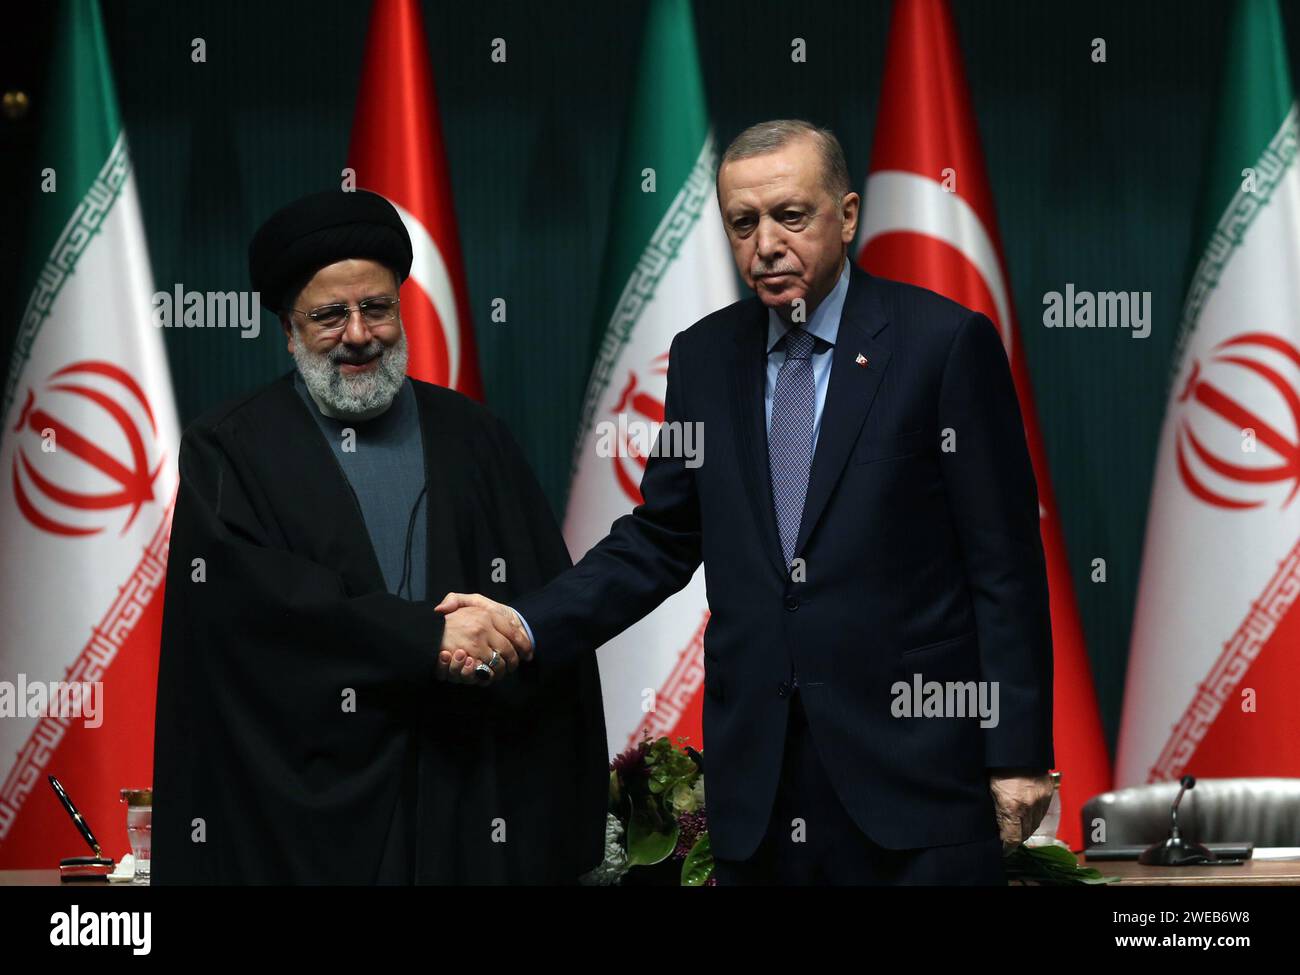 Ankara, T¨¹rkiye. Januar 2024. Der türkische Präsident Recep Tayyip Erdogan (R) schüttelt dem iranischen Präsidenten Ebrahim Raisi bei einer gemeinsamen Pressekonferenz in Ankara, T¨¹rkiye, am 24. Januar 2024 die Hand. Der iranische Präsident Ebrahim Raisi sagte am Mittwoch, Iran und T¨¹rkiye hätten sich das Ziel gesetzt, den bilateralen Handel auf 30 Milliarden Dollar pro Jahr anzuheben, was angesichts ihrer Kapazitäten erreichbar ist. Quelle: Mustafa Kaya/Xinhua/Alamy Live News Stockfoto